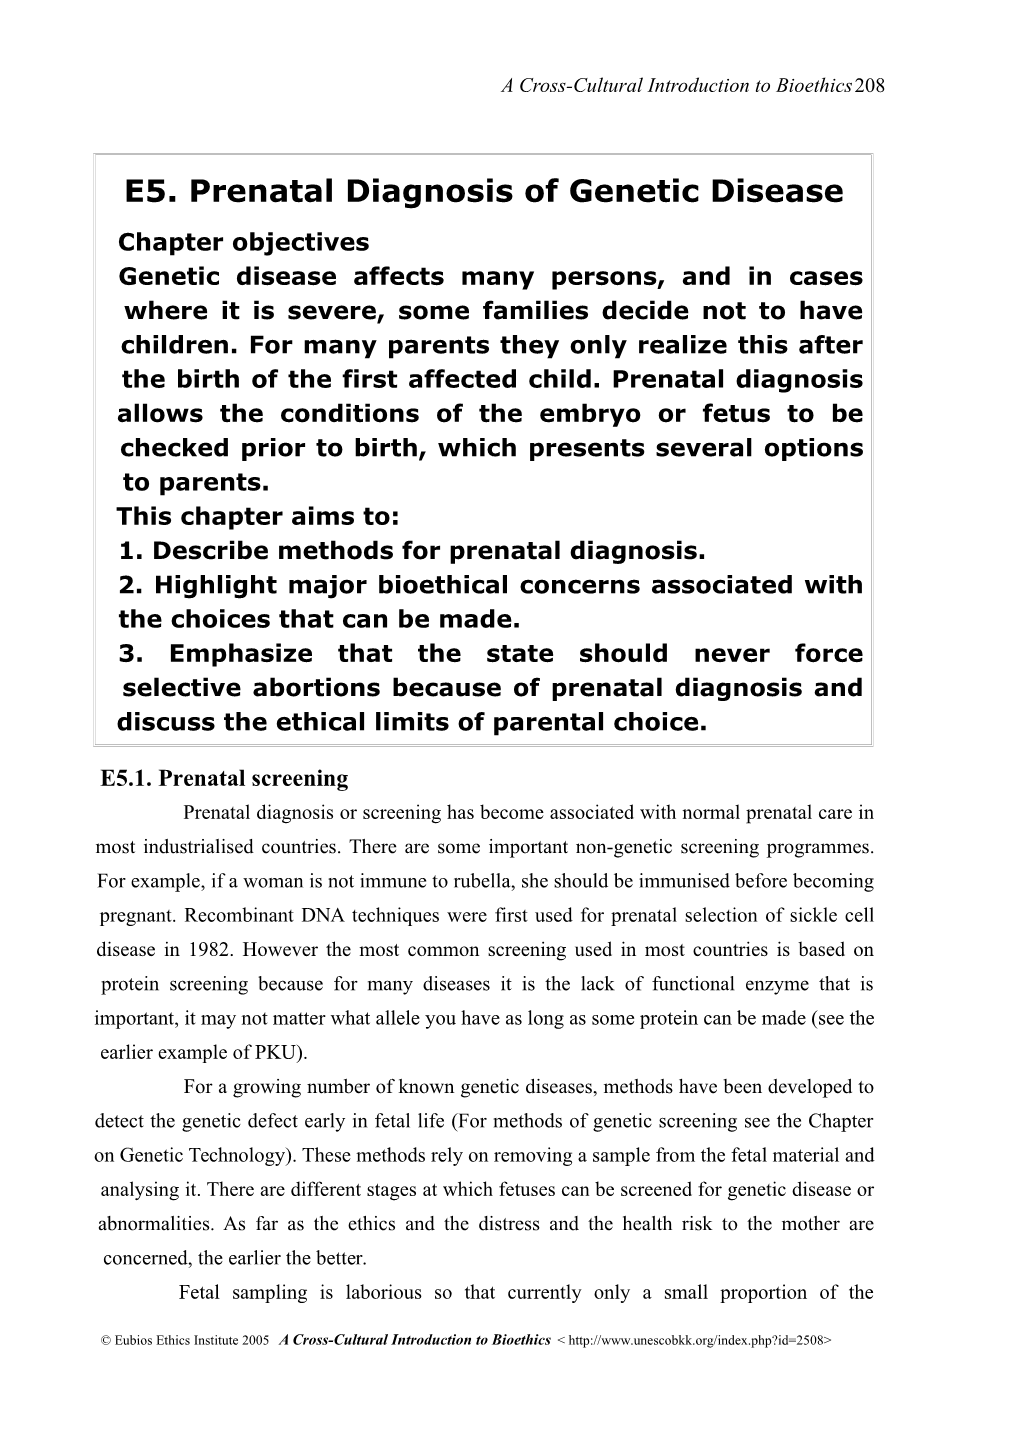 E5. Prenatal Diagnosis of Genetic Disease